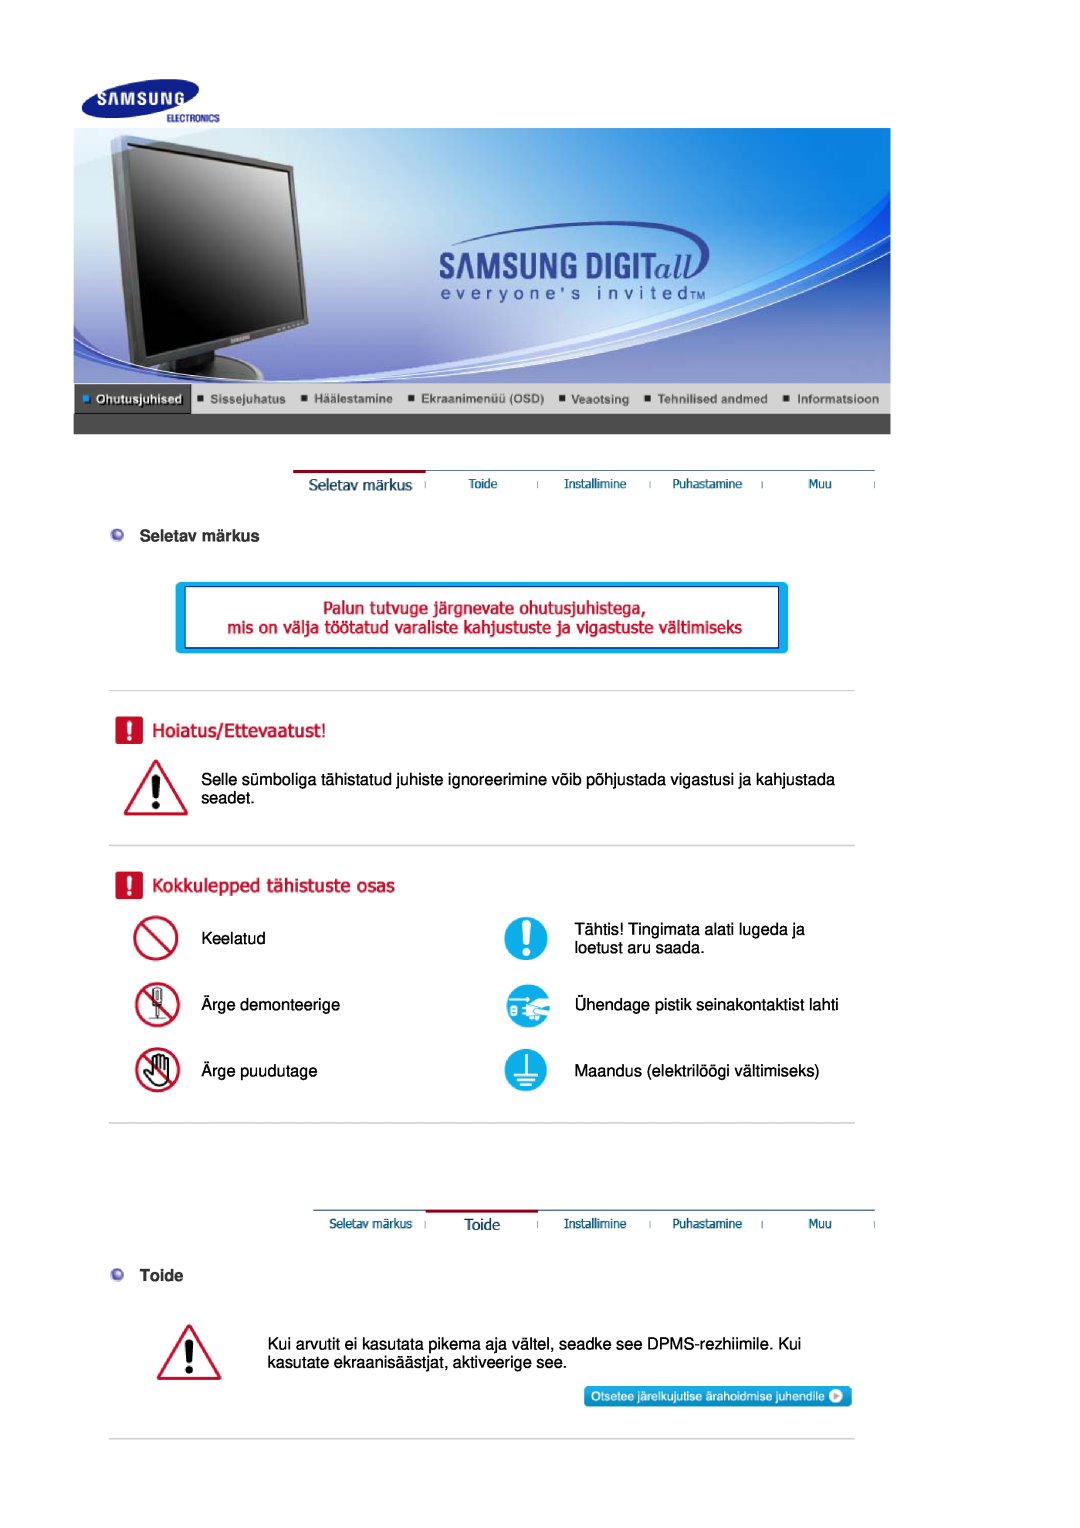 Samsung LS17HADKSX/EDC manual Seletav märkus, Toide, Keelatud, Tähtis! Tingimata alati lugeda ja, loetust aru saada 